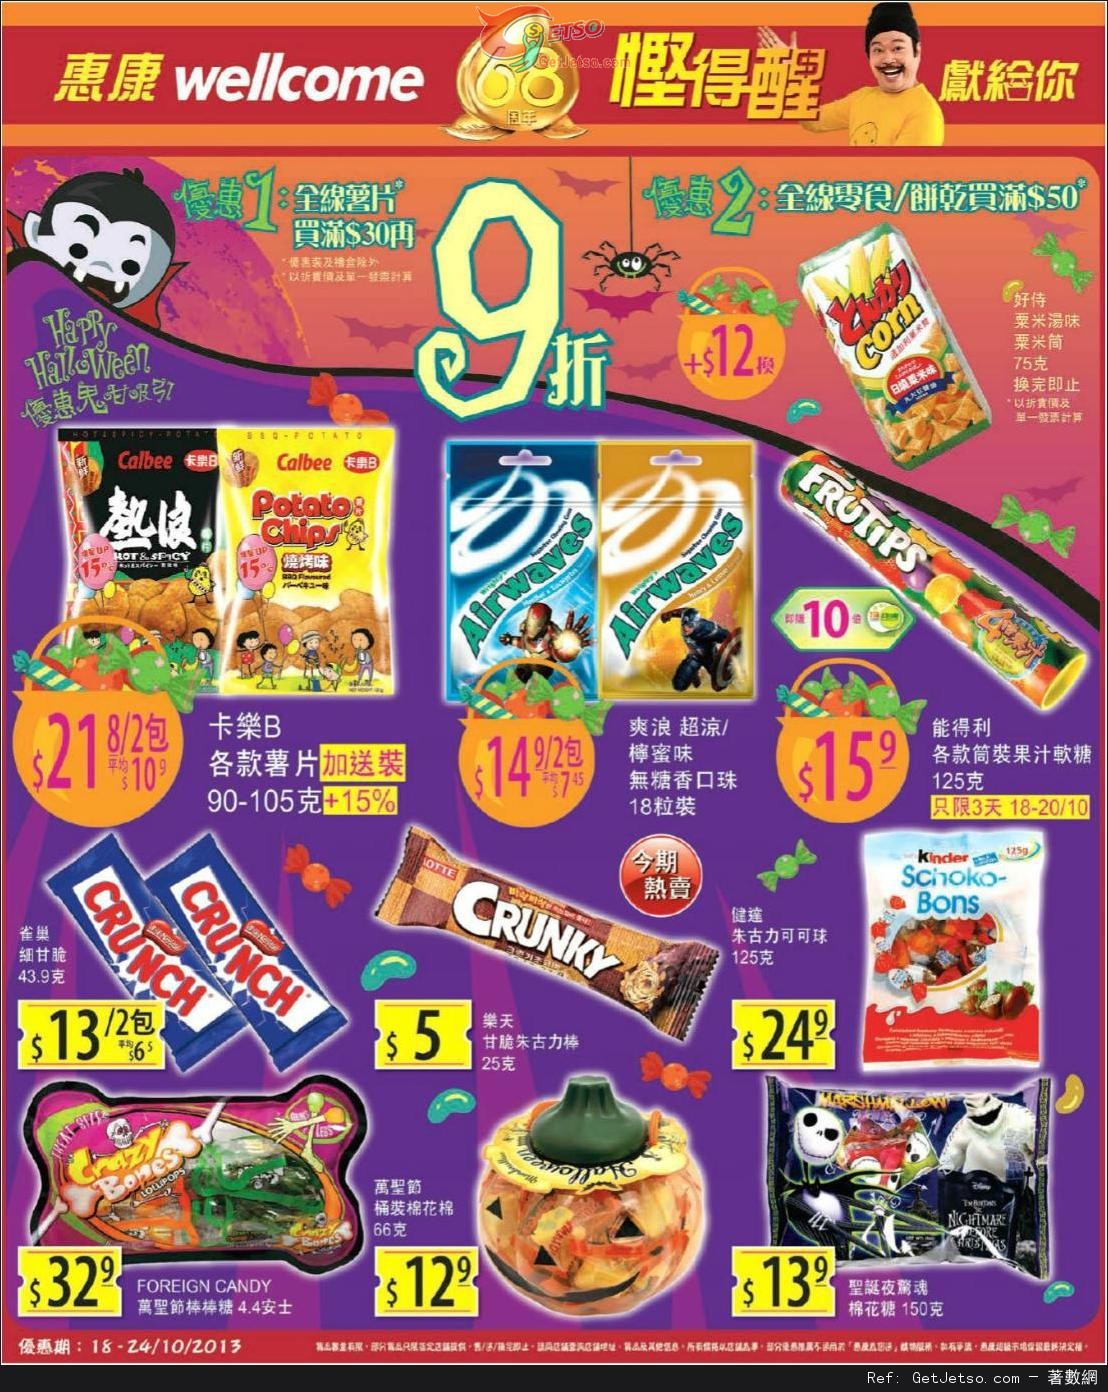 惠康超級市場全線薯片/零食及餅乾購買優惠(至13年10月24日)圖片1